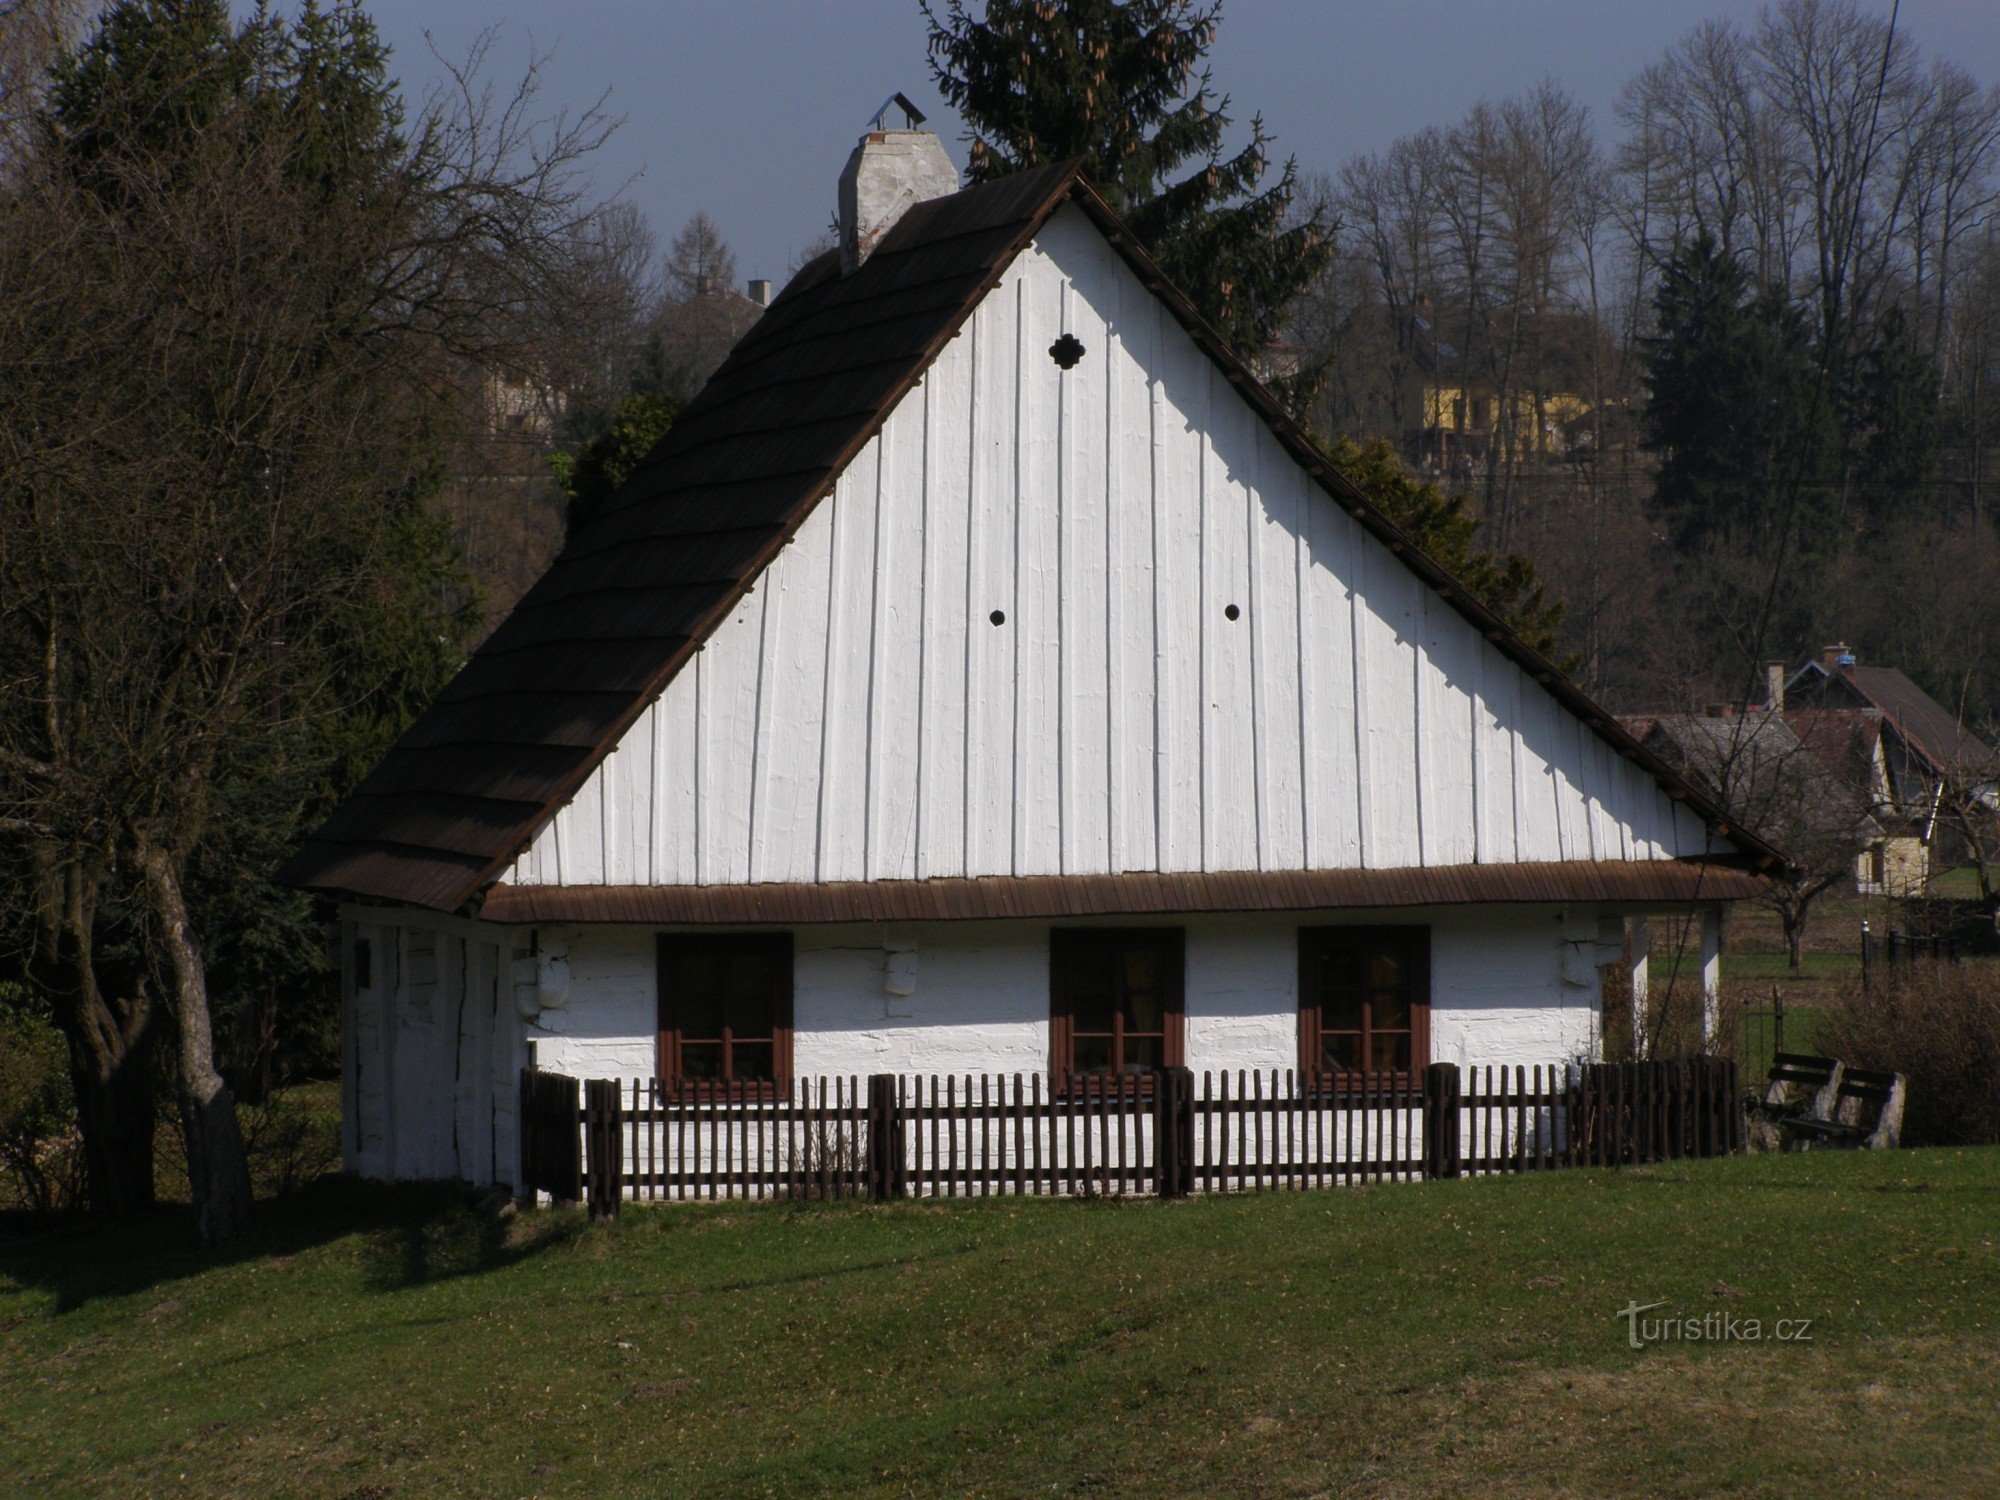 Žamberk (Helvíkovice) - locul de naștere al lui Prokop Diviš